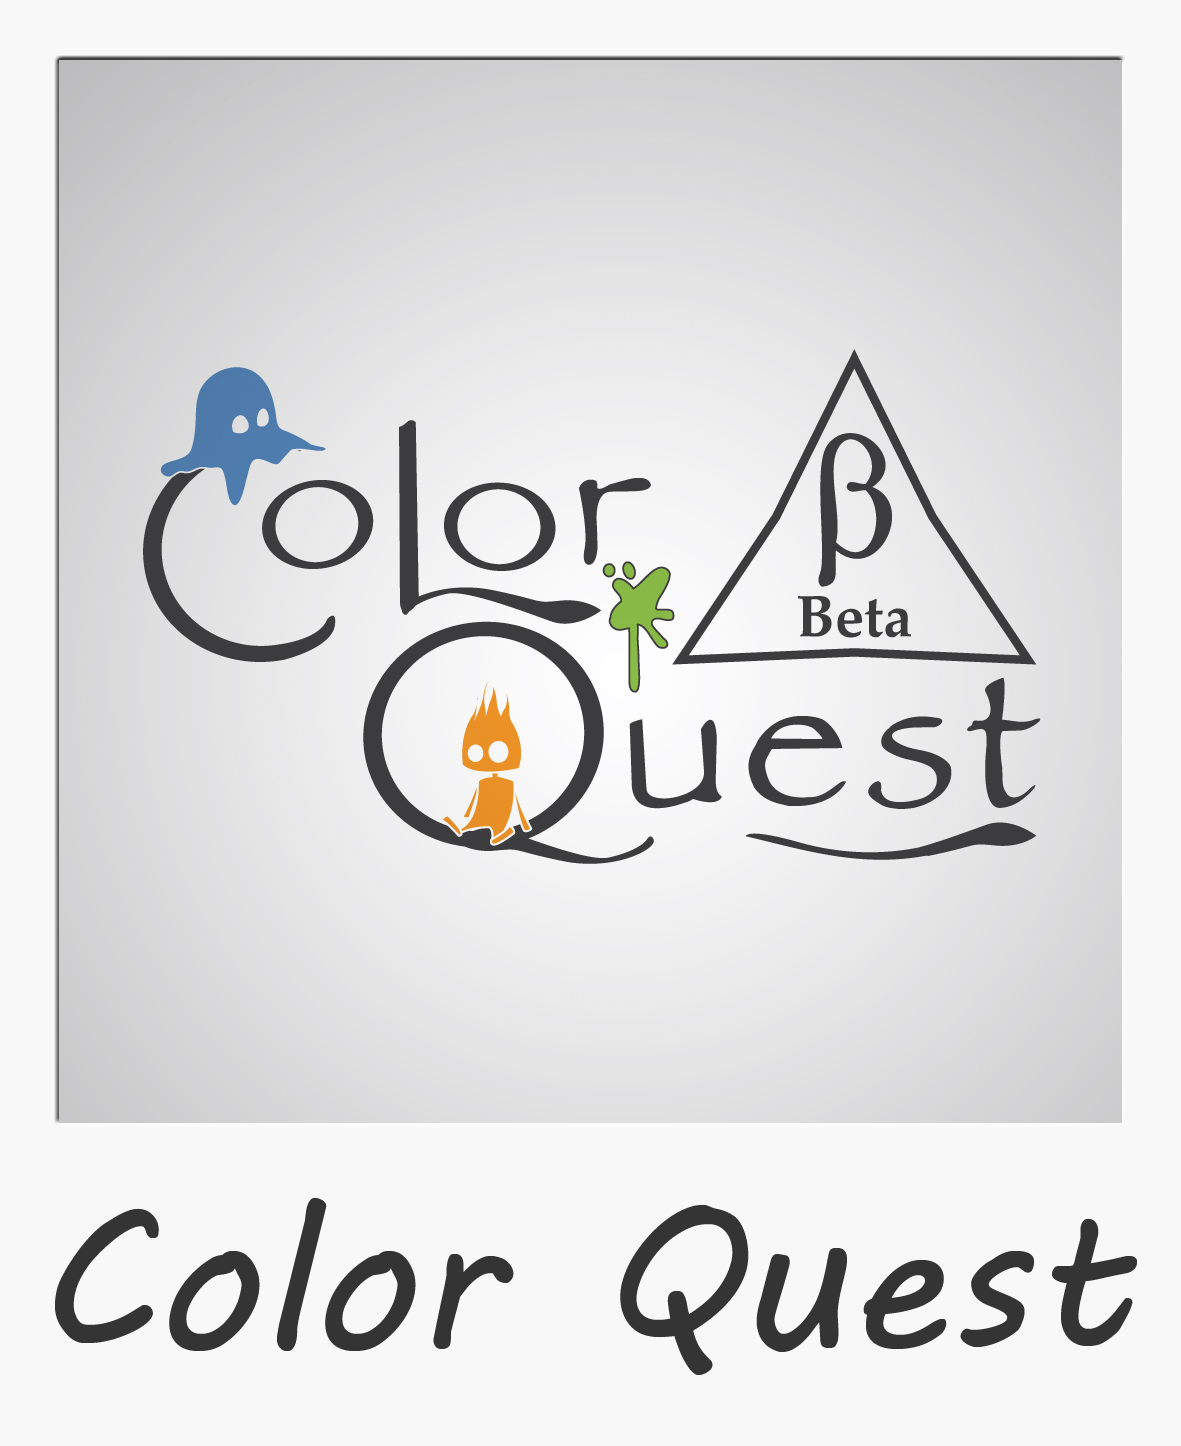 Color Quest Beta news